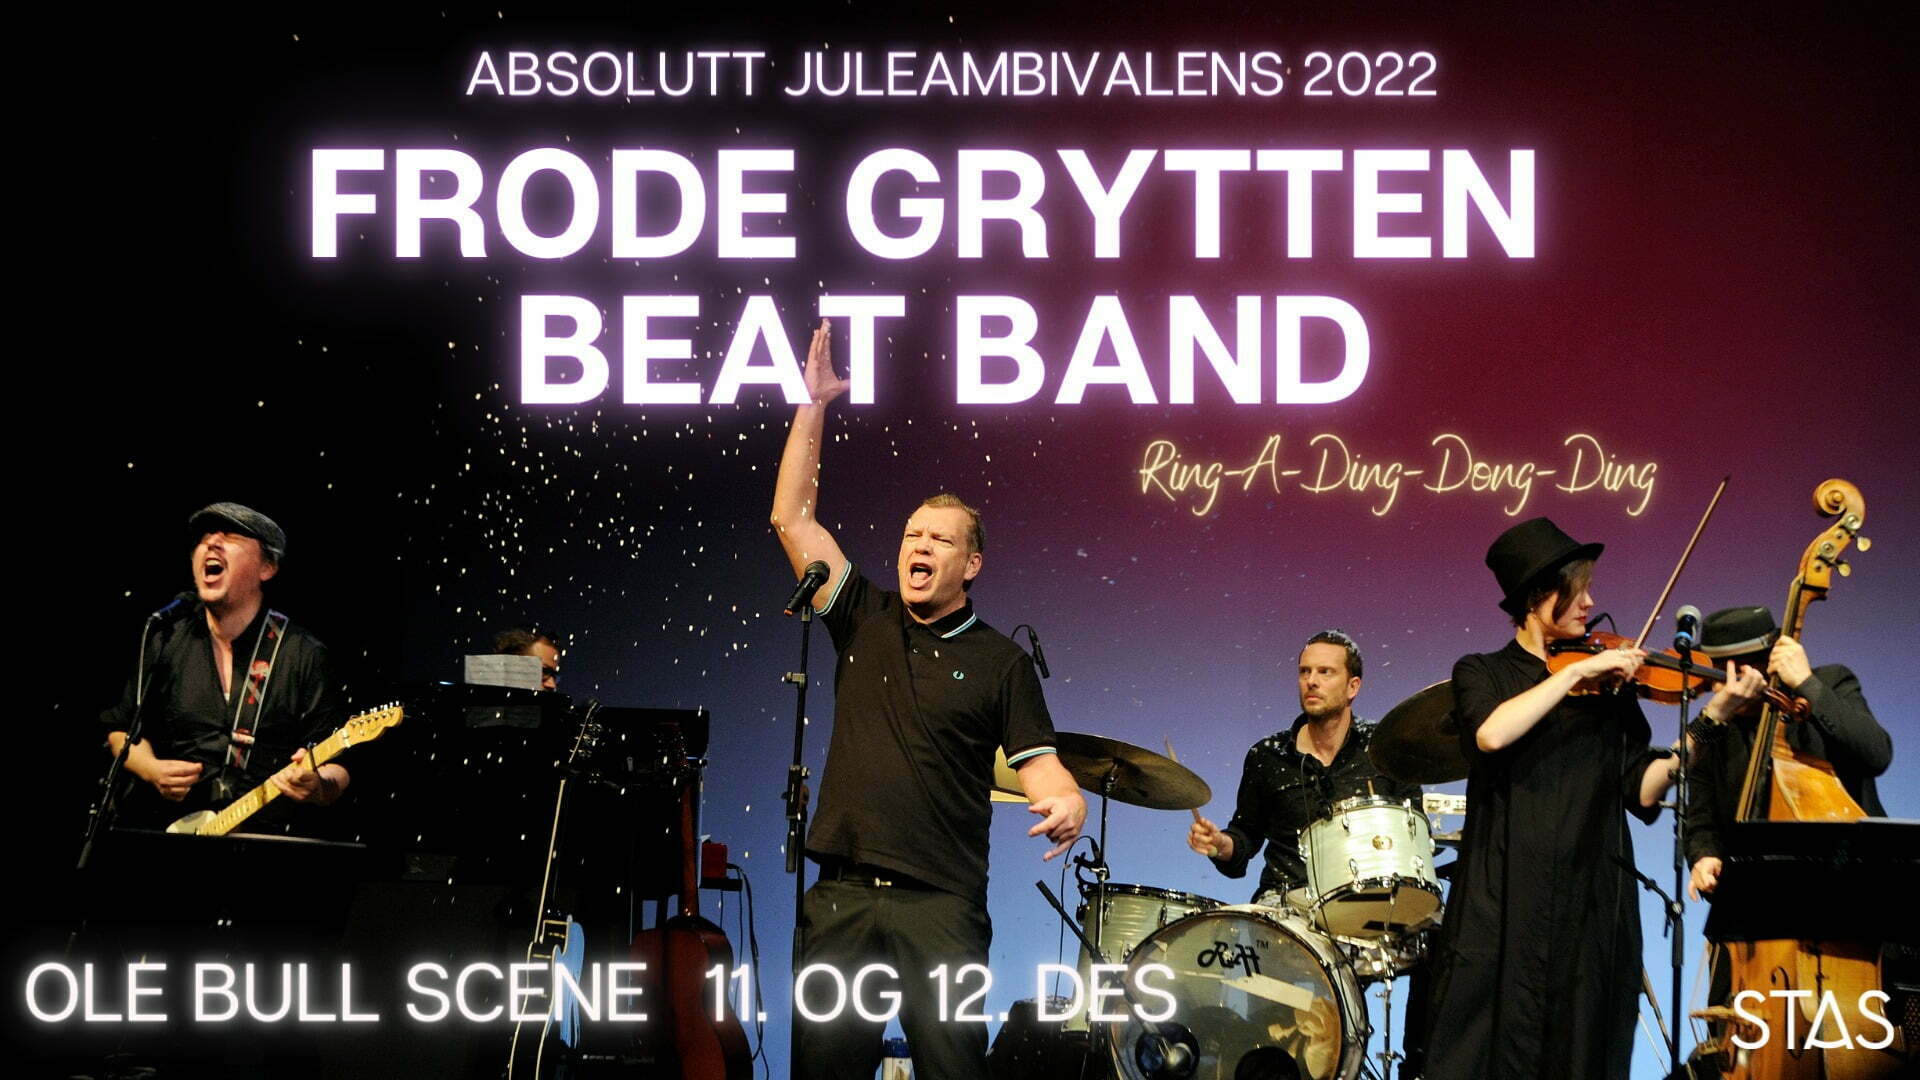 Frode Grytten Beat Band // Absolutt juleambivalens  - Stas Artist 